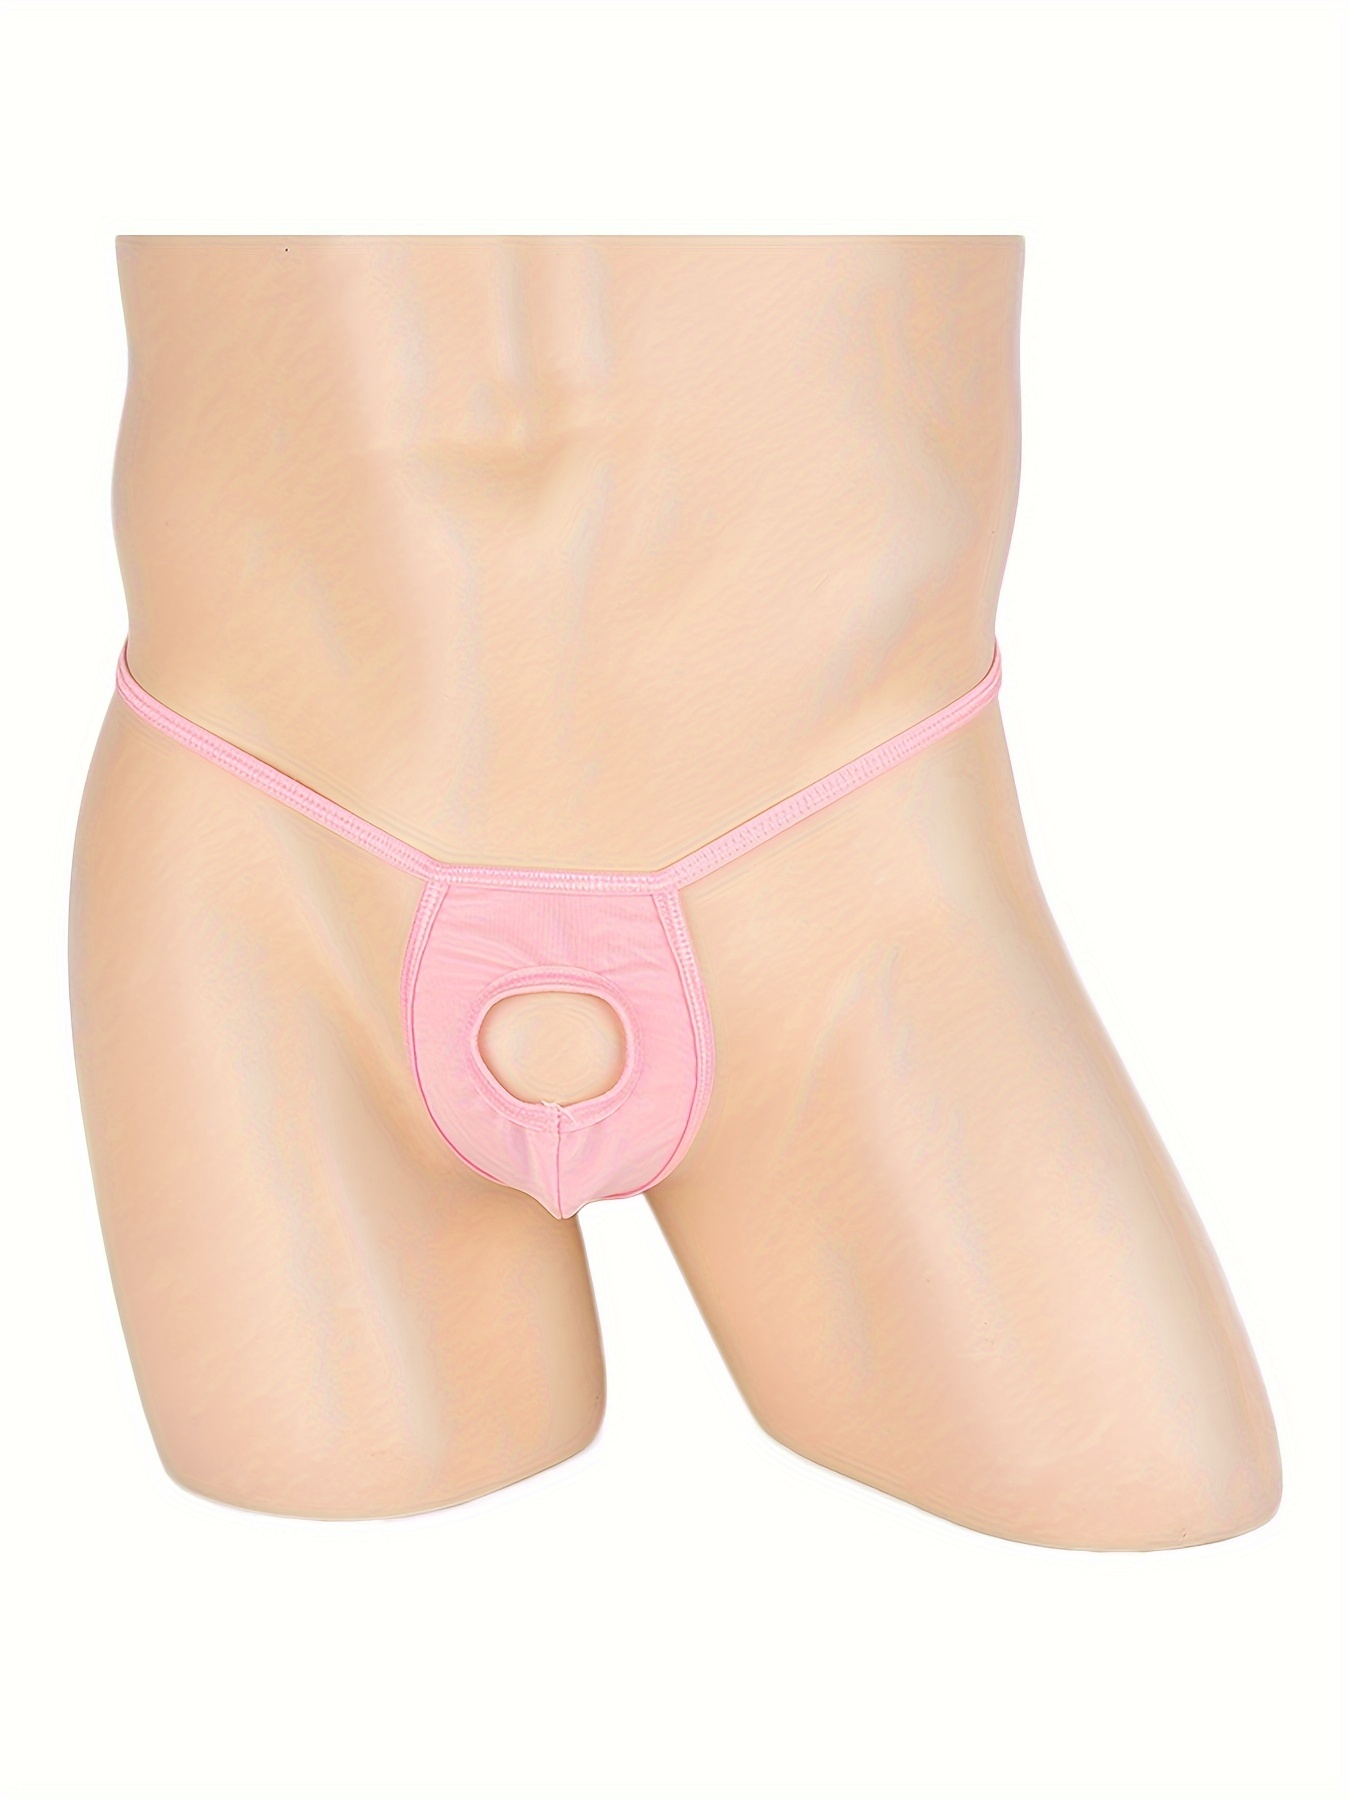 Men's Open Front Hole Briefs Thongs G-string Underwear T-back Bikini  Panties